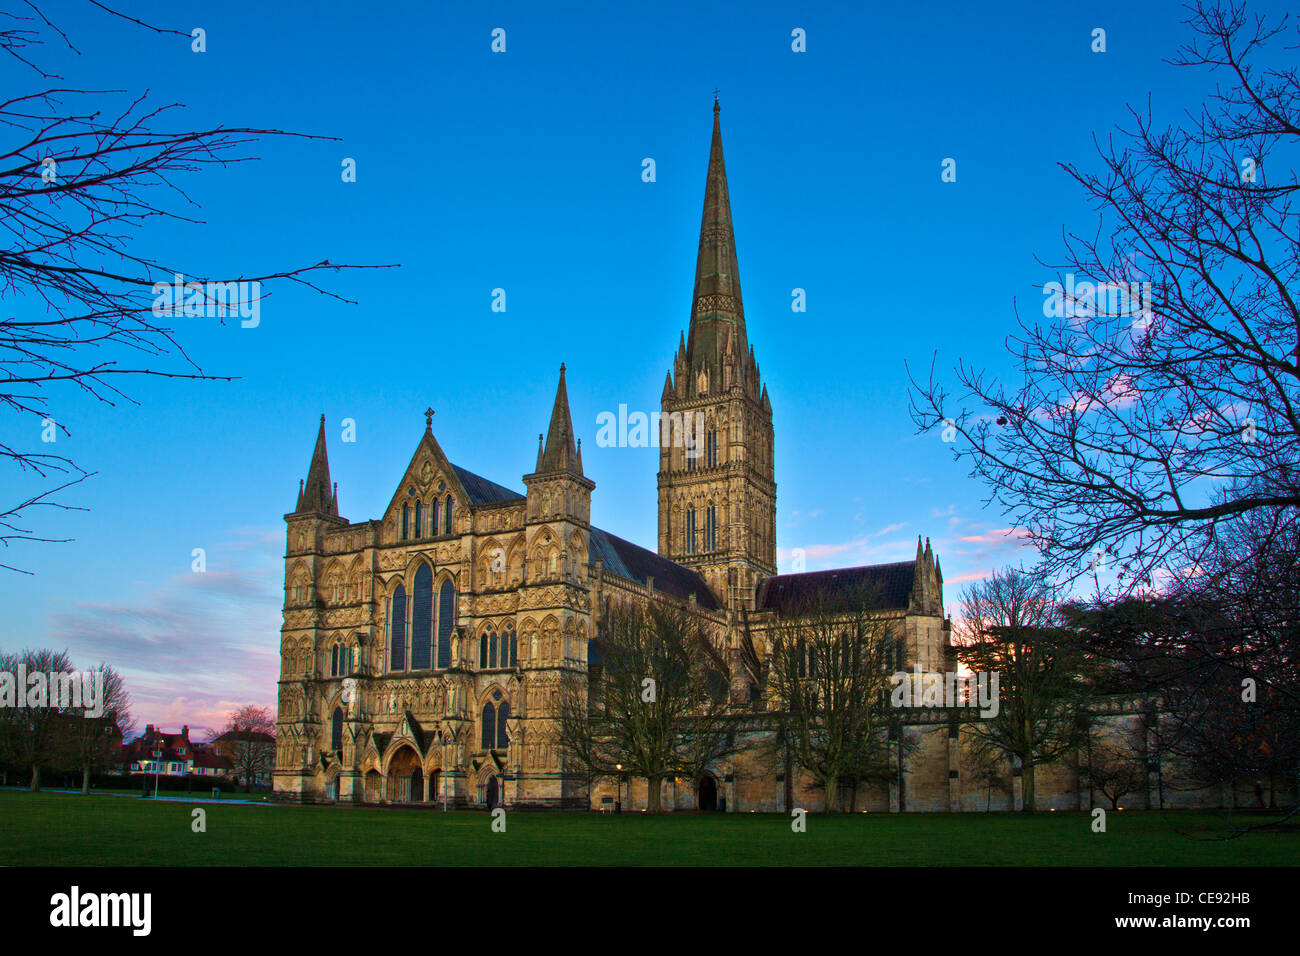 Le crépuscule tombe sur la façade ouest et spire de la ville médiévale de la cathédrale de Salisbury, Wiltshire, Angleterre, Royaume-Uni Banque D'Images